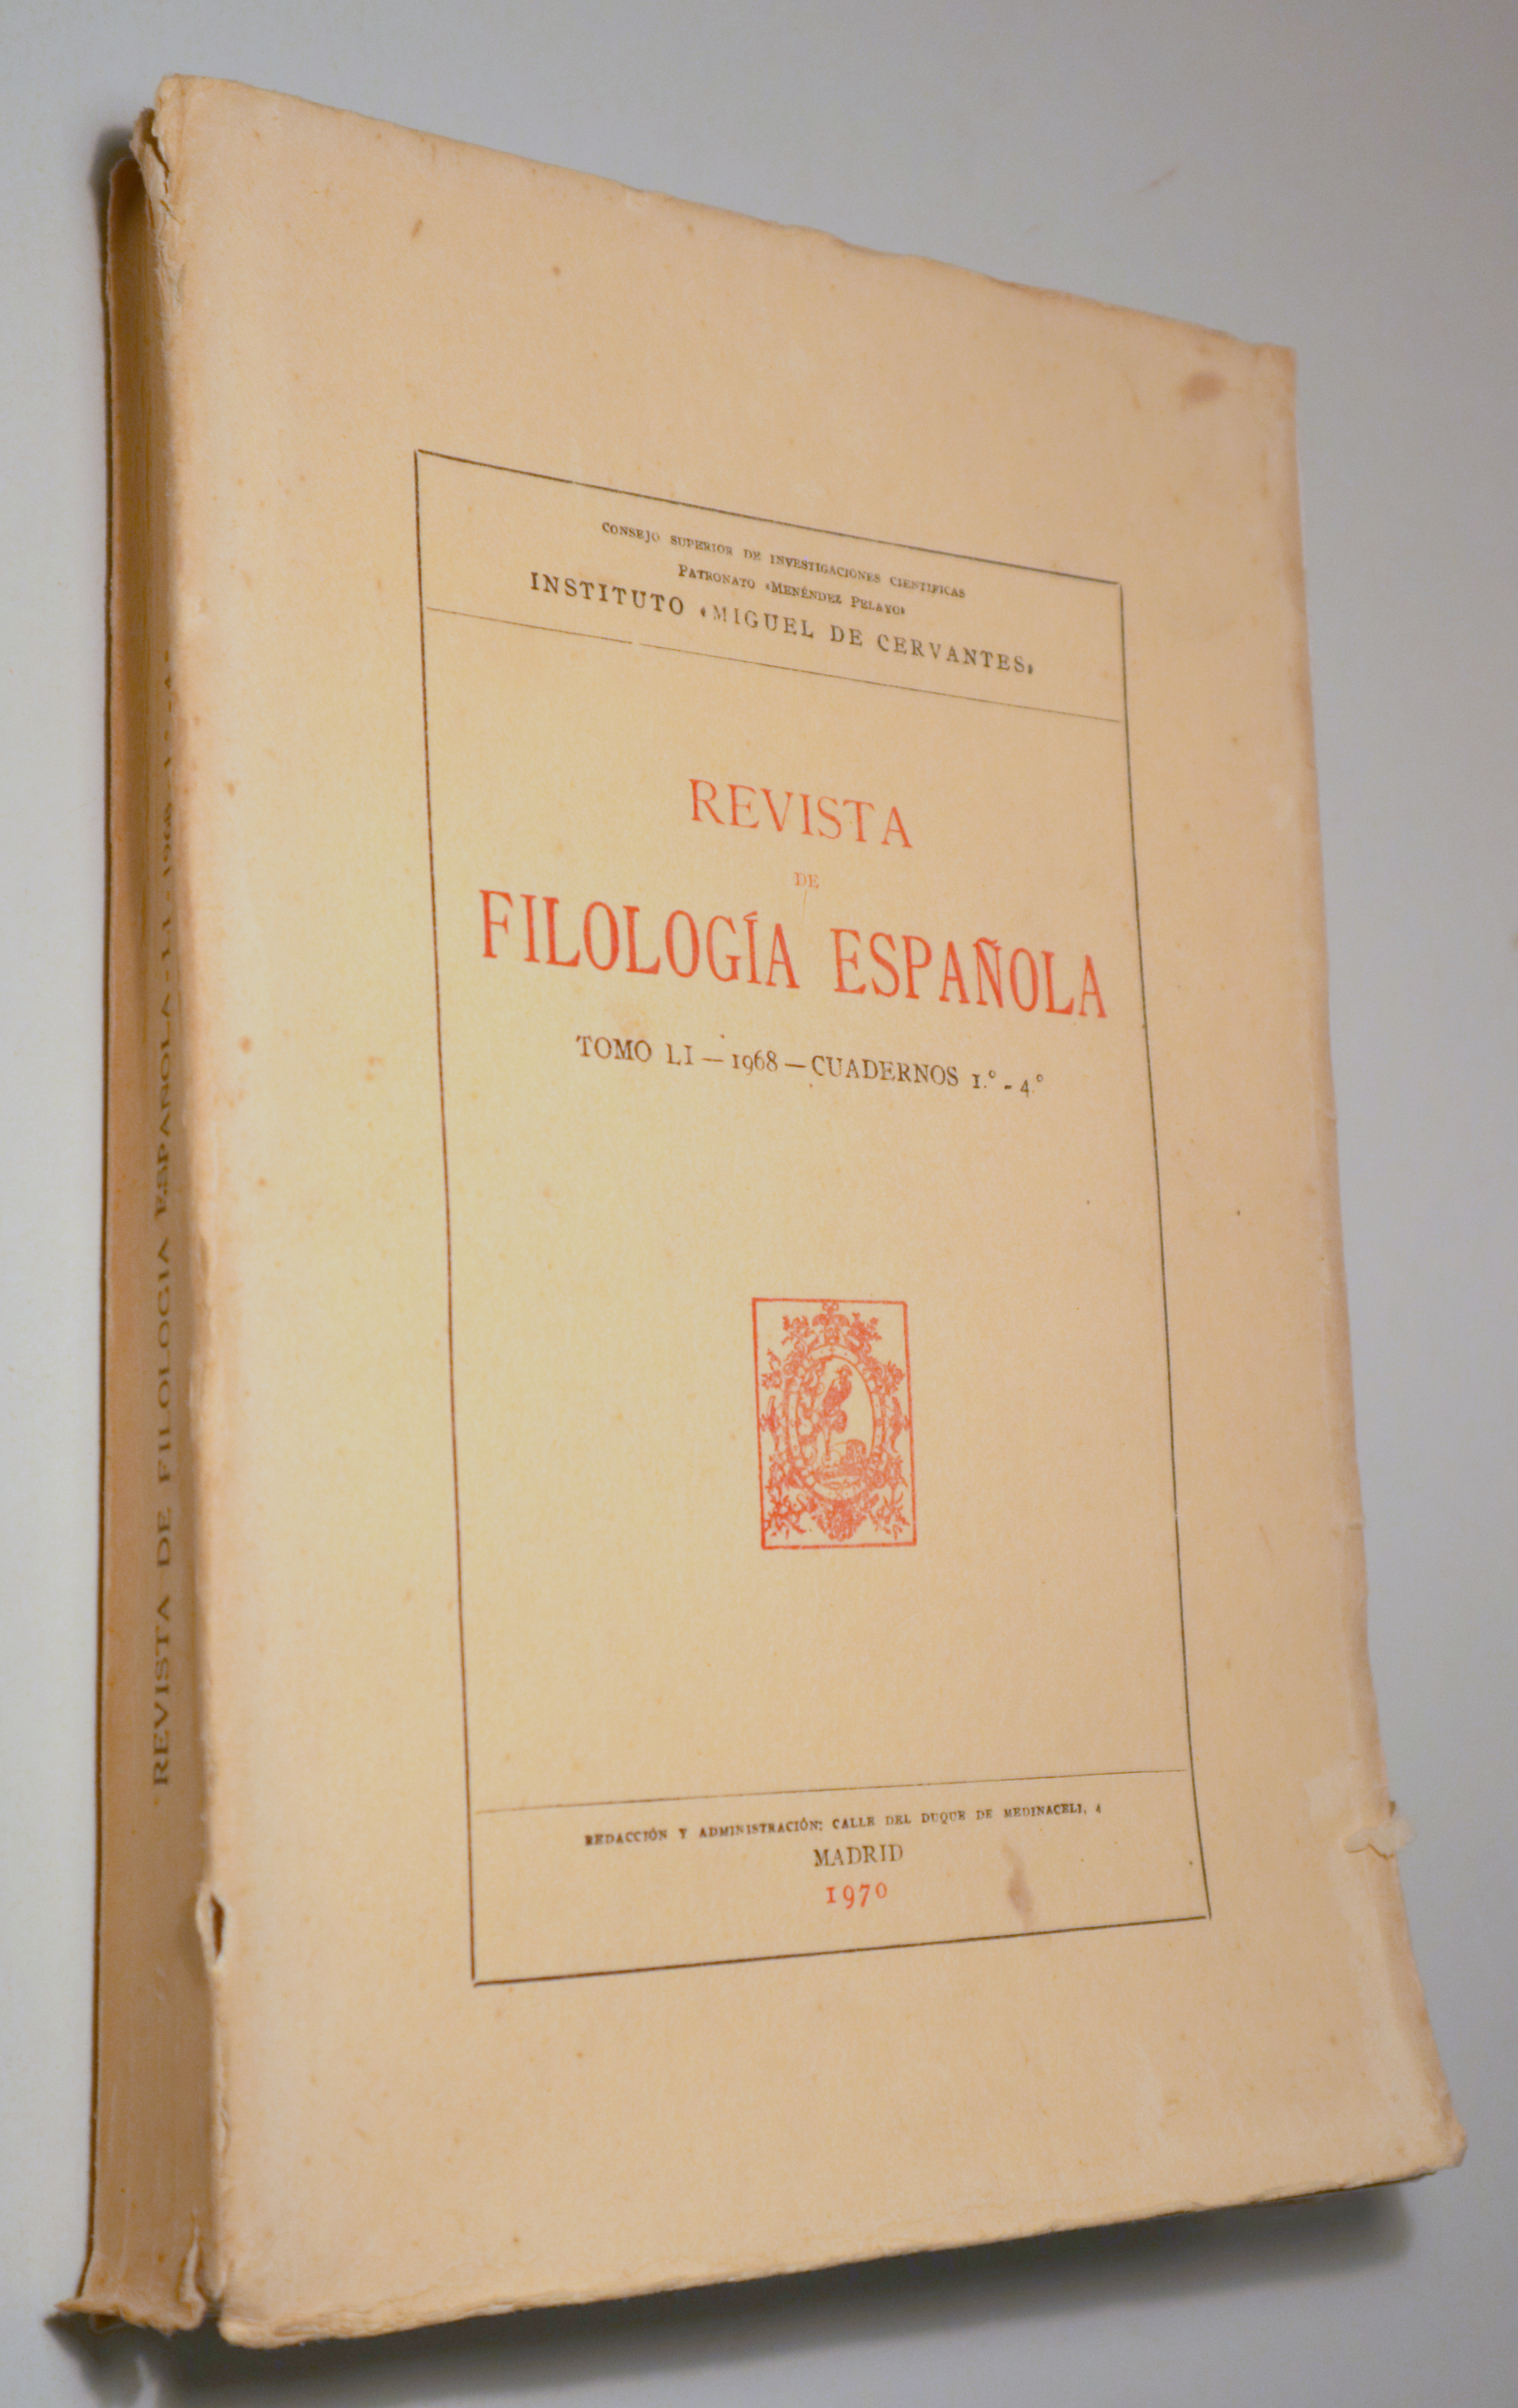 REVISTA DE FILOLOGÍA ESPAÑOLA. Tomo LI Cuadernos 1º-4º - Madrid 1972